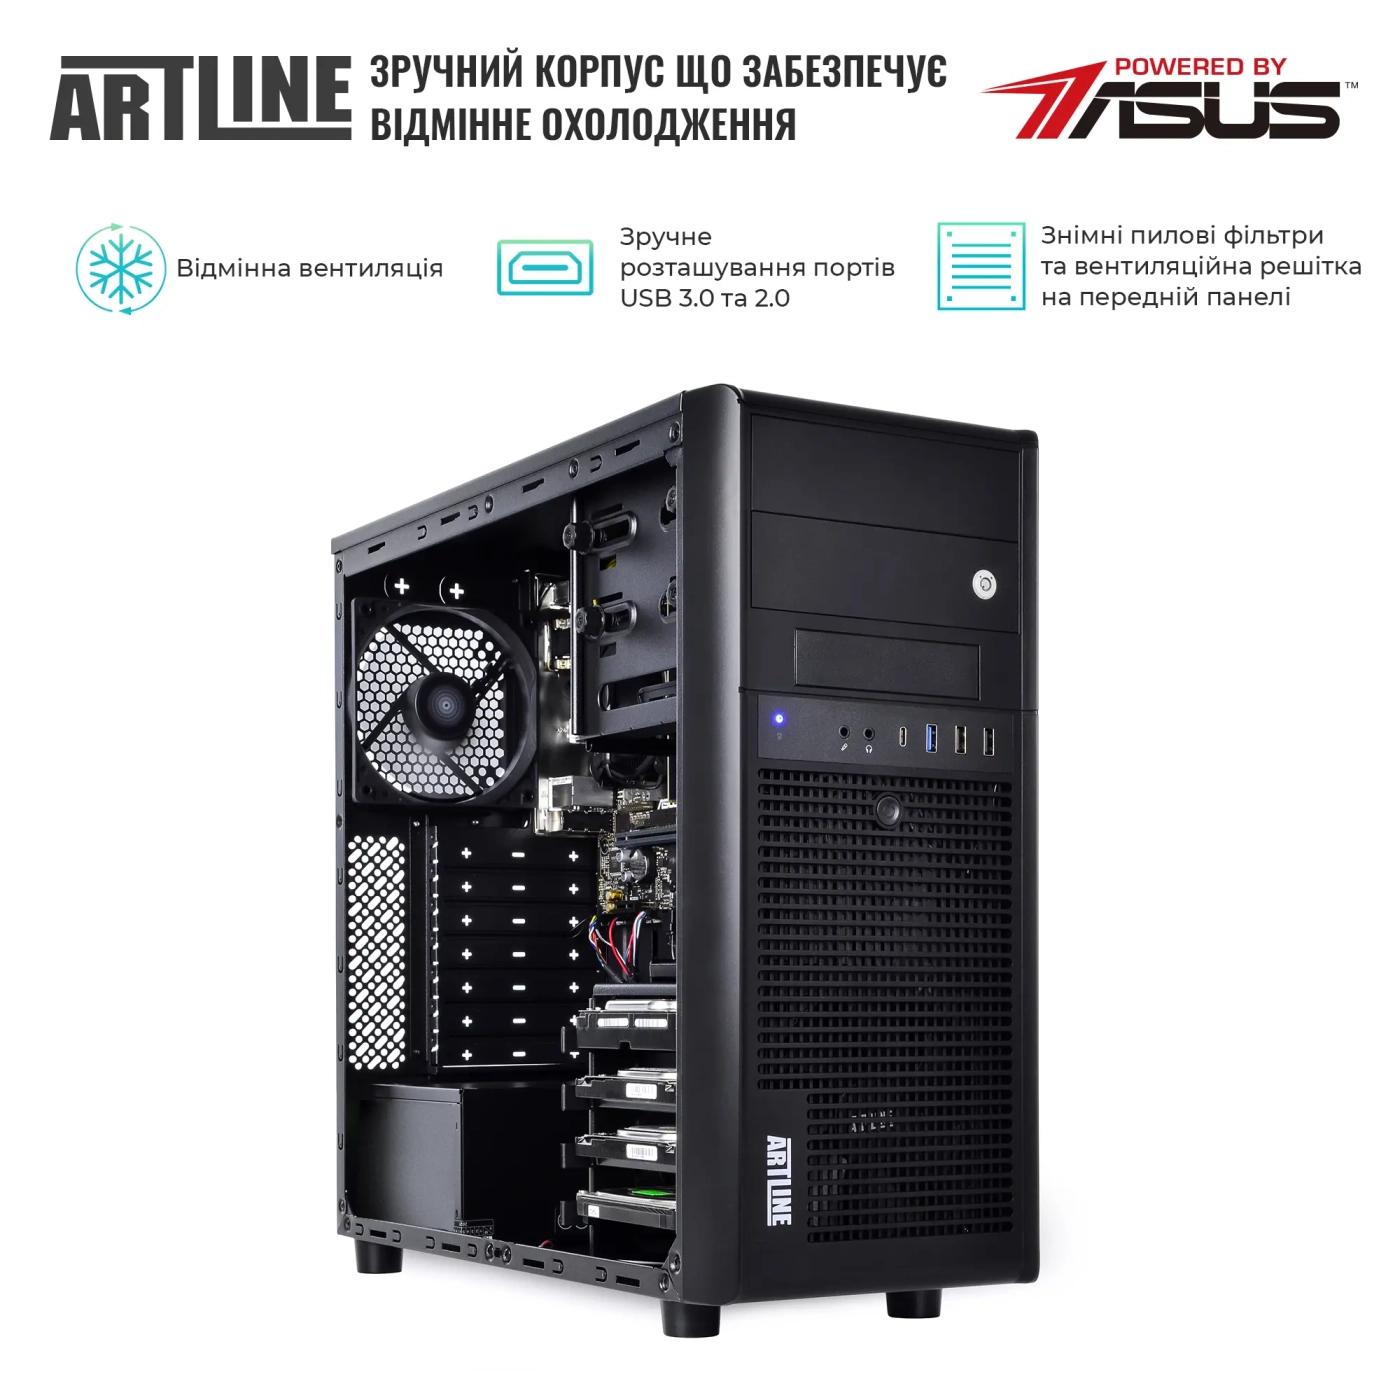 Купить Сервер ARTLINE Business T37v28 - фото 3